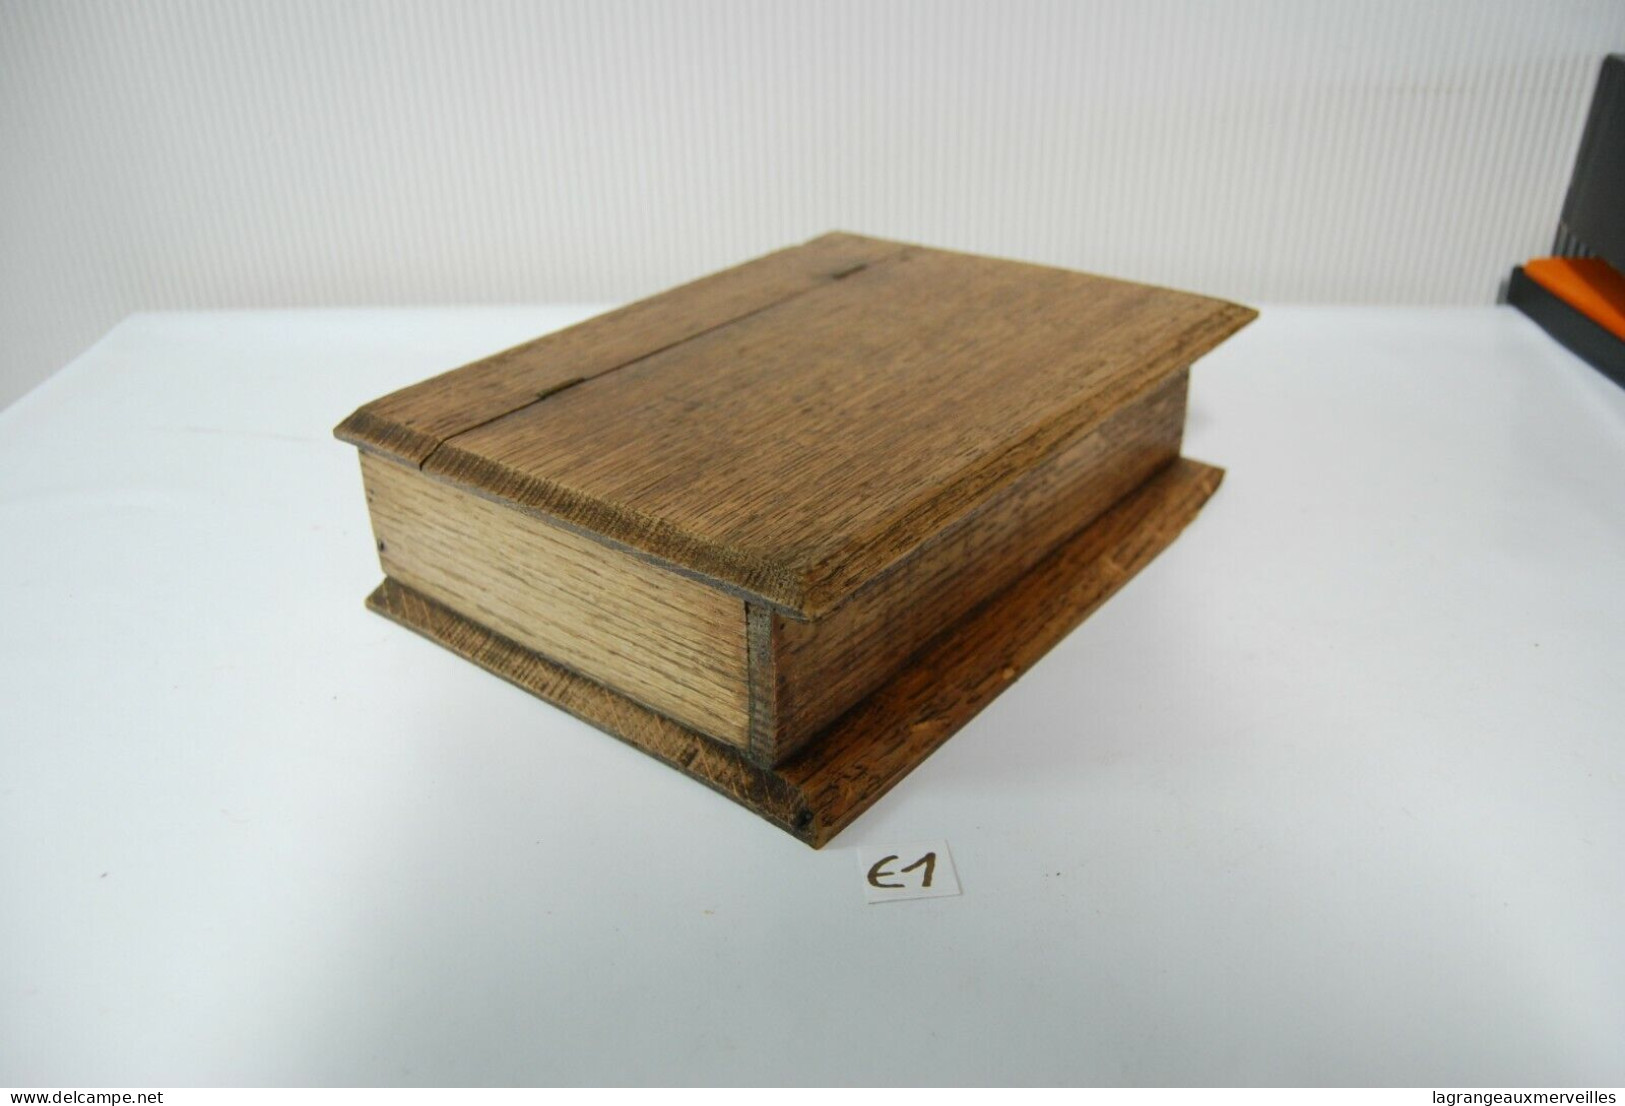 E1 Ancienne boite en bois - Administration France - Notaire